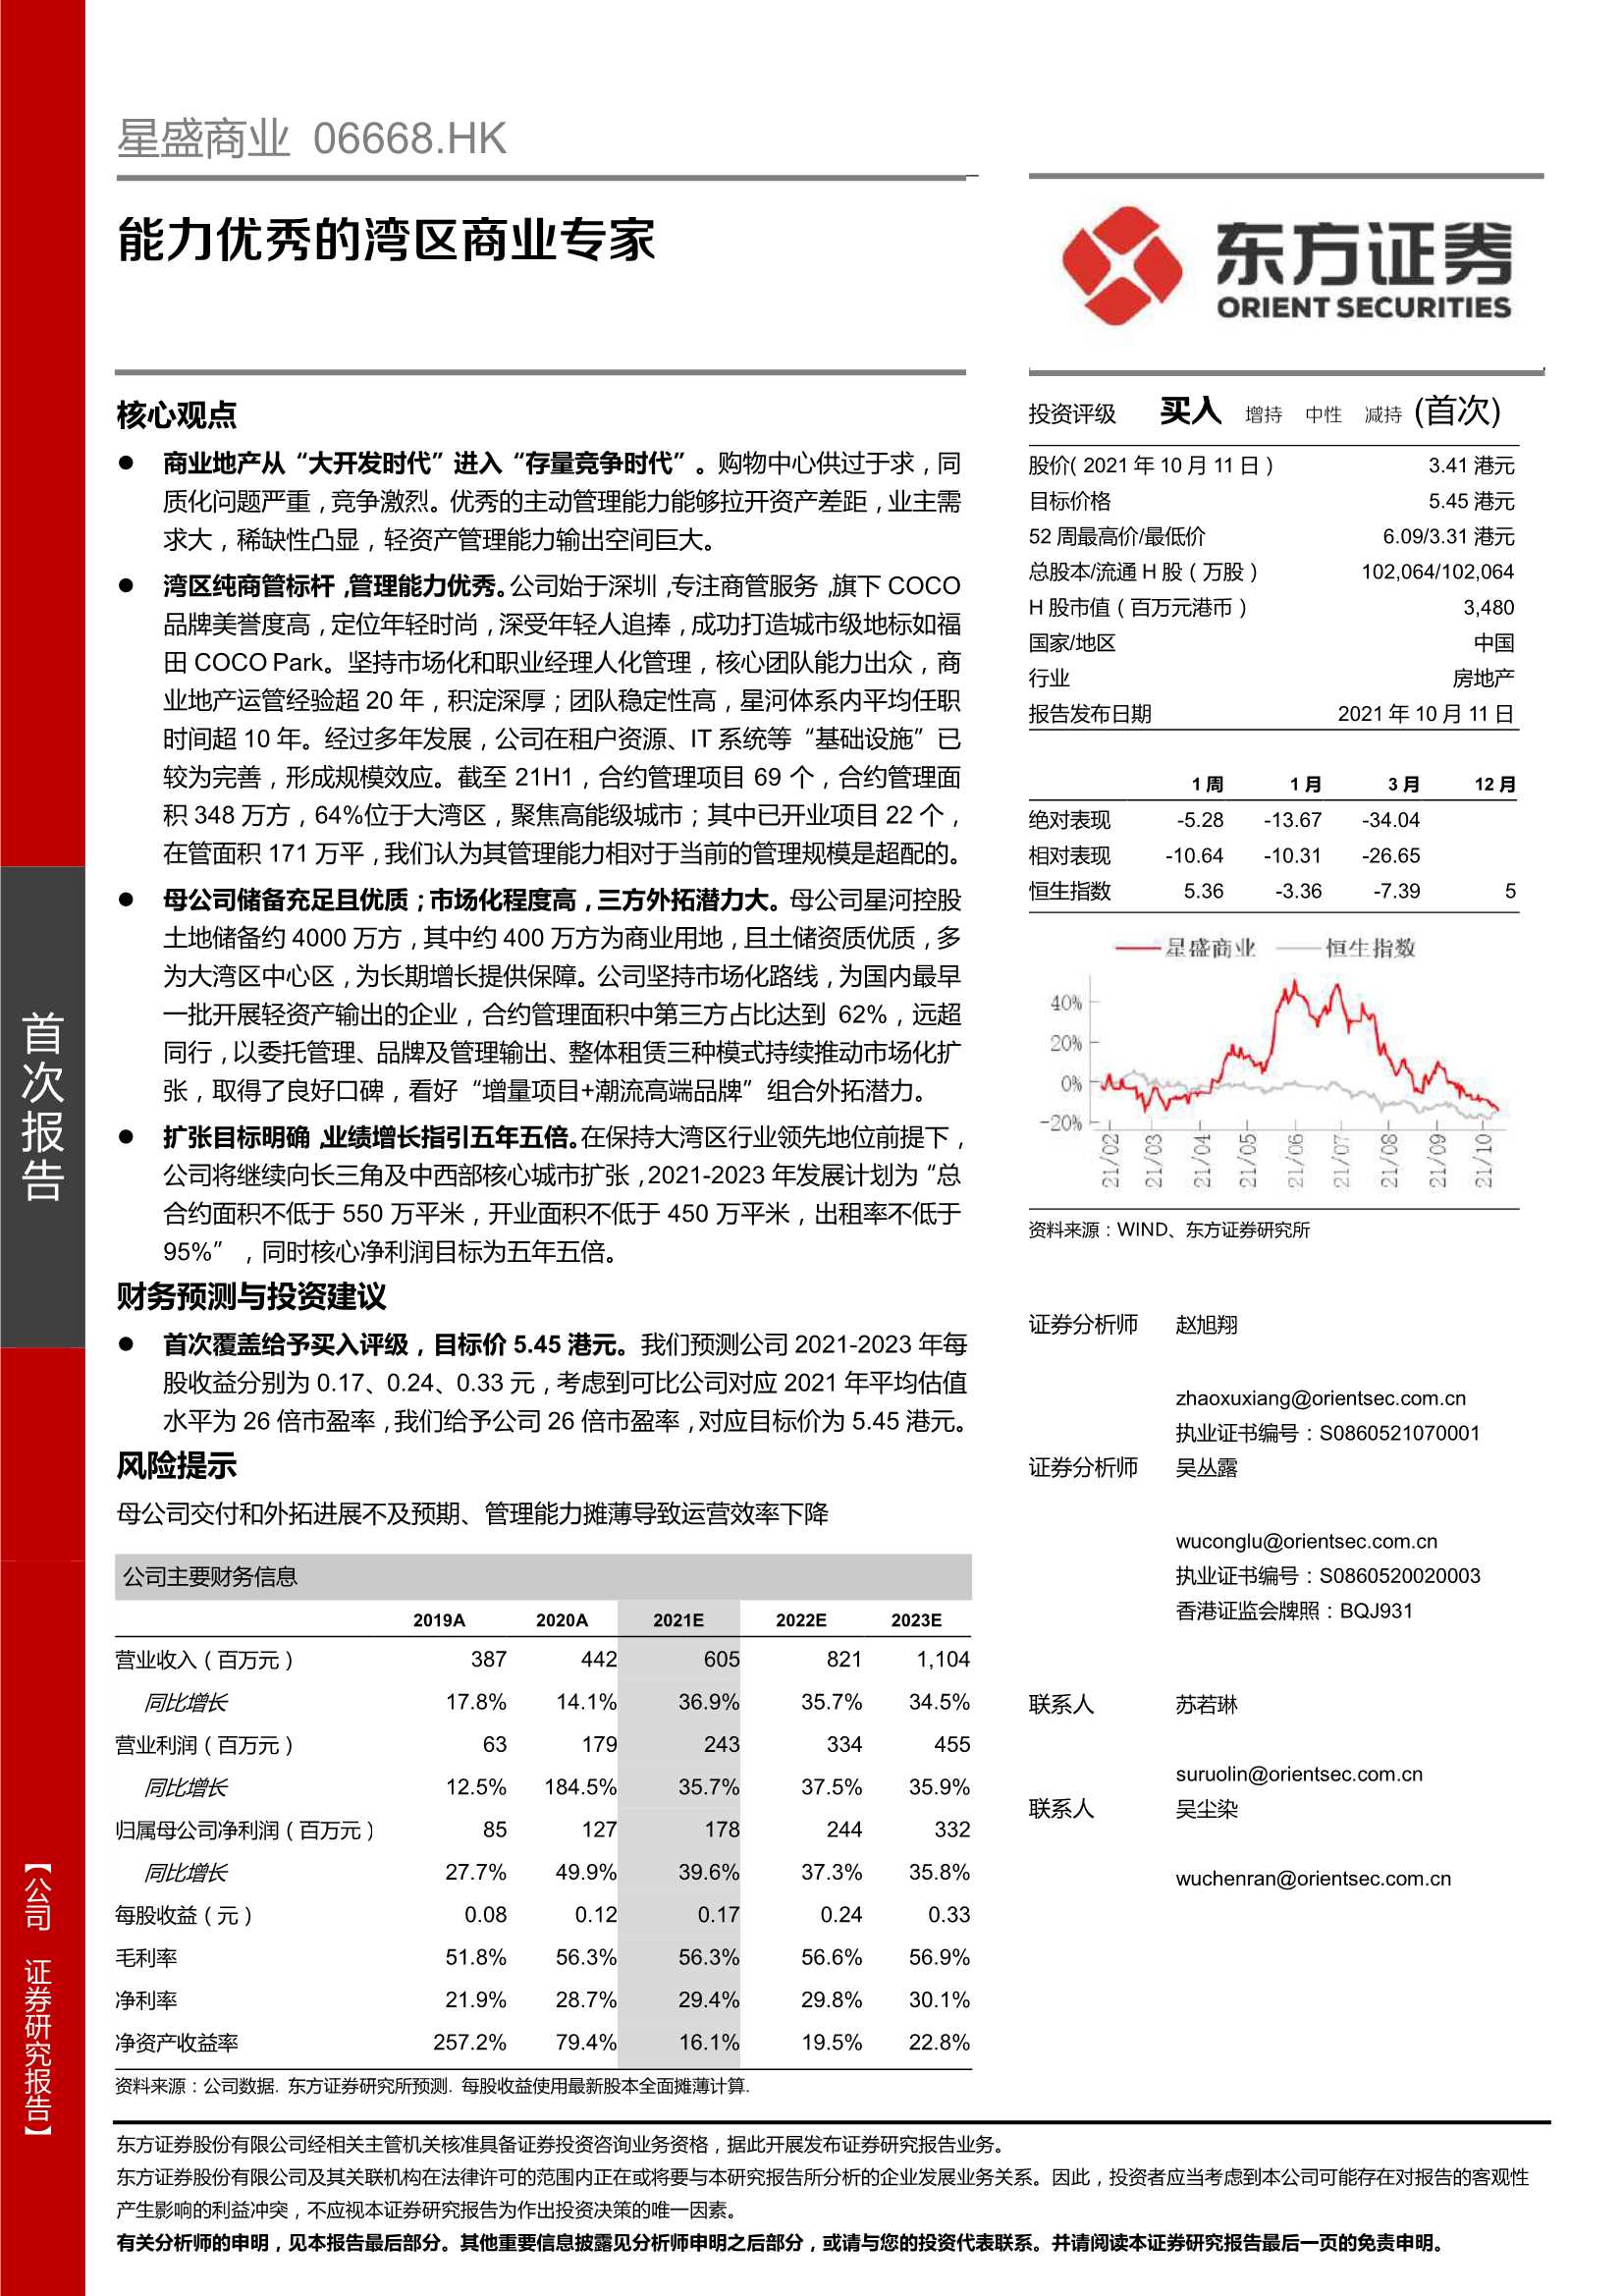 东方证券-星盛商业-6668.HK-能力优秀的湾区商业专家-20211011-29页